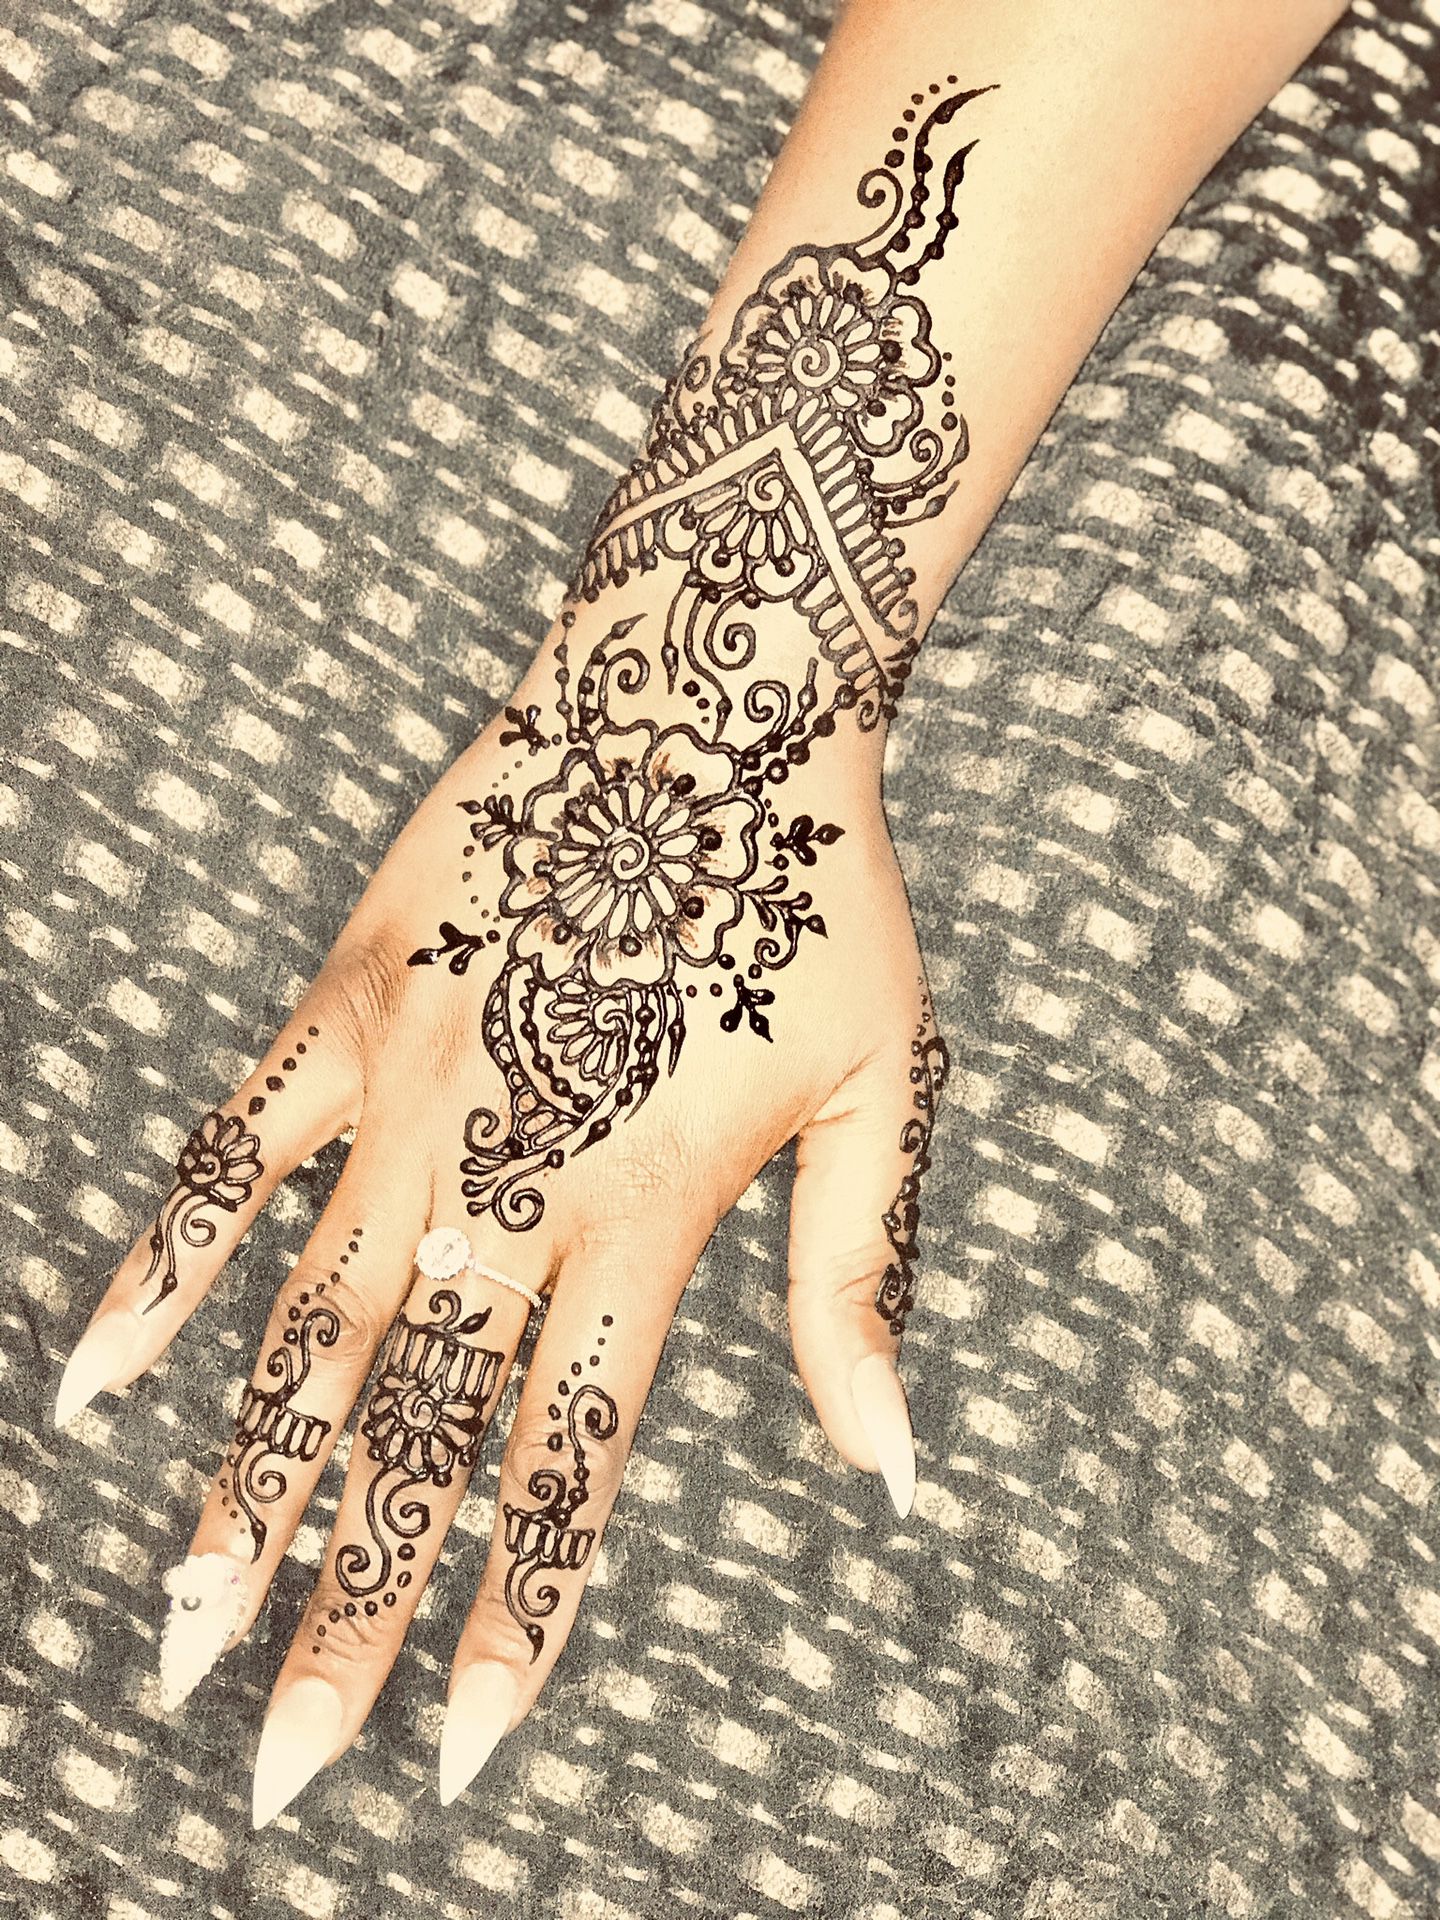 Henna for summer. Temporary tattoos